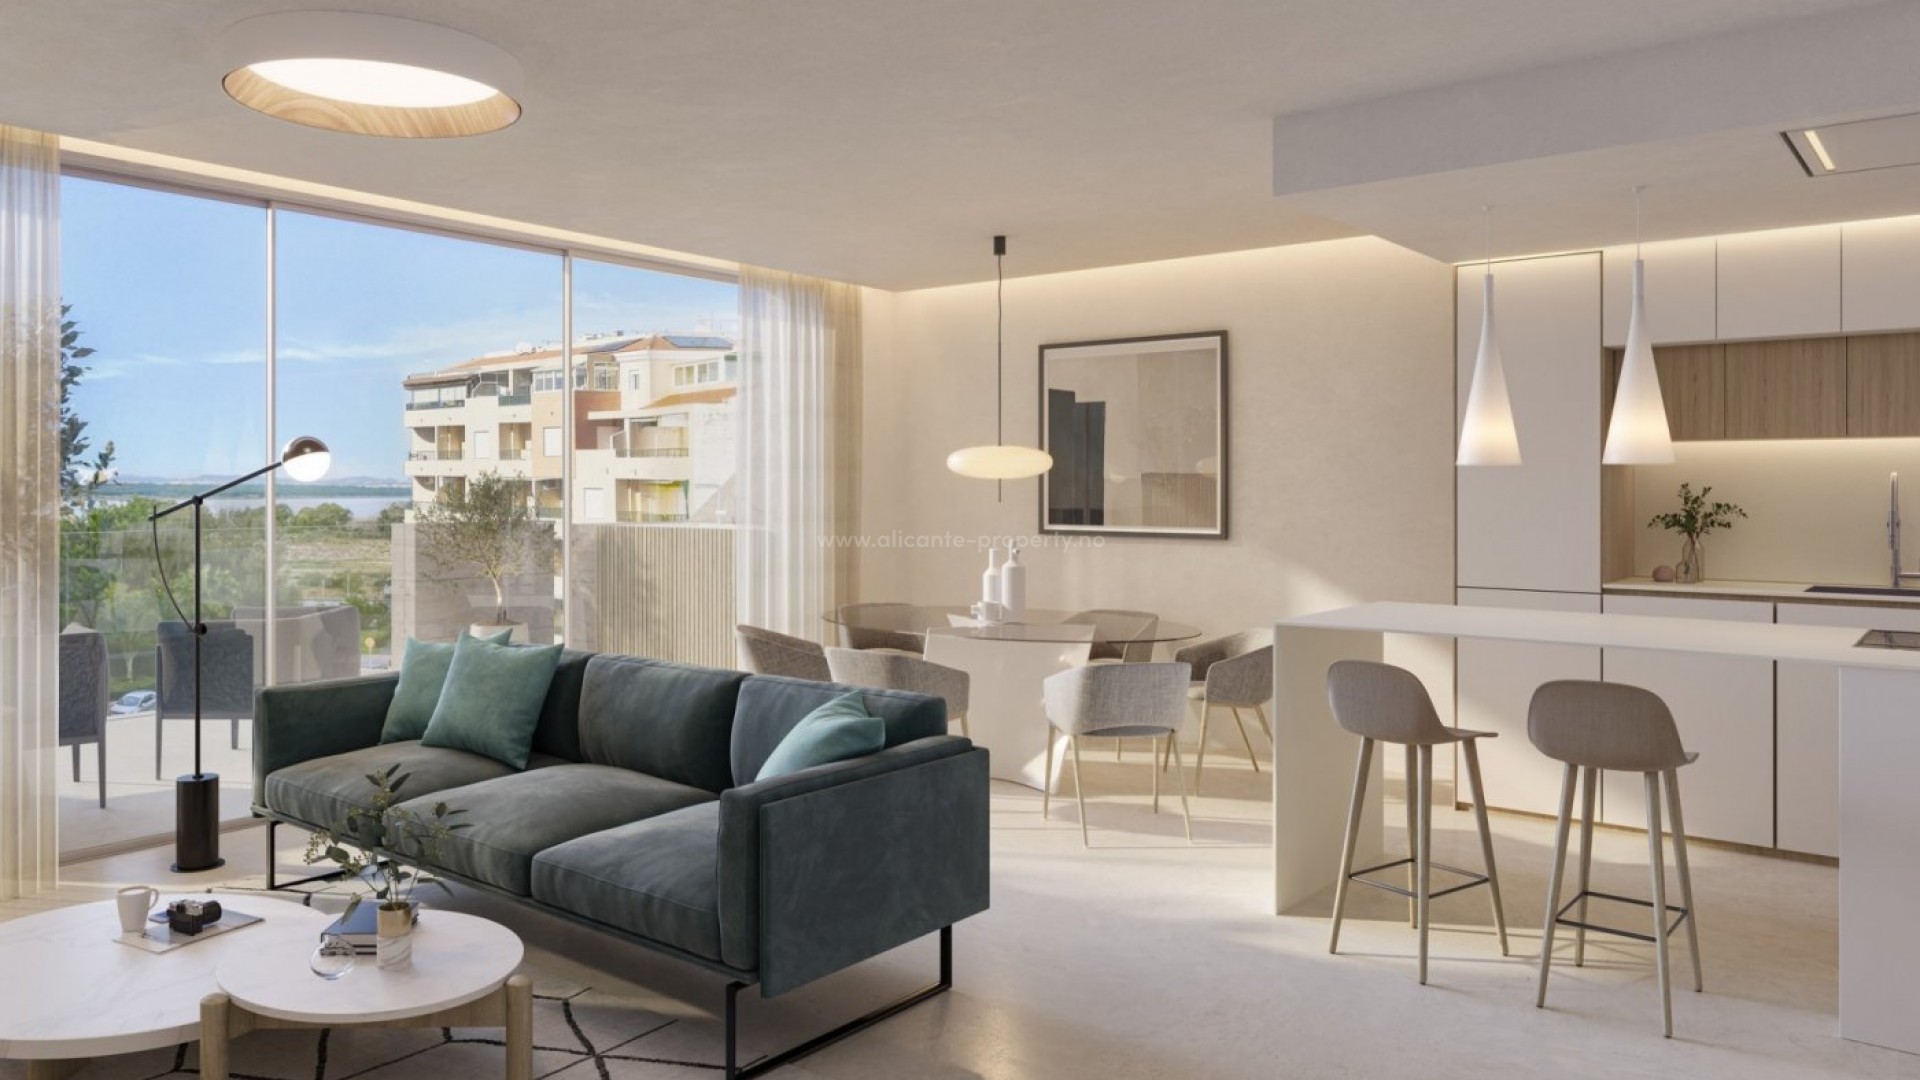 Penthouse-leiligheter i La Mata,Torrevieja, 3 soverom, 2 bad, stor felles takterrasse med jacuzzi og vestvendt utsikt, underjordiske parkeringsplasser